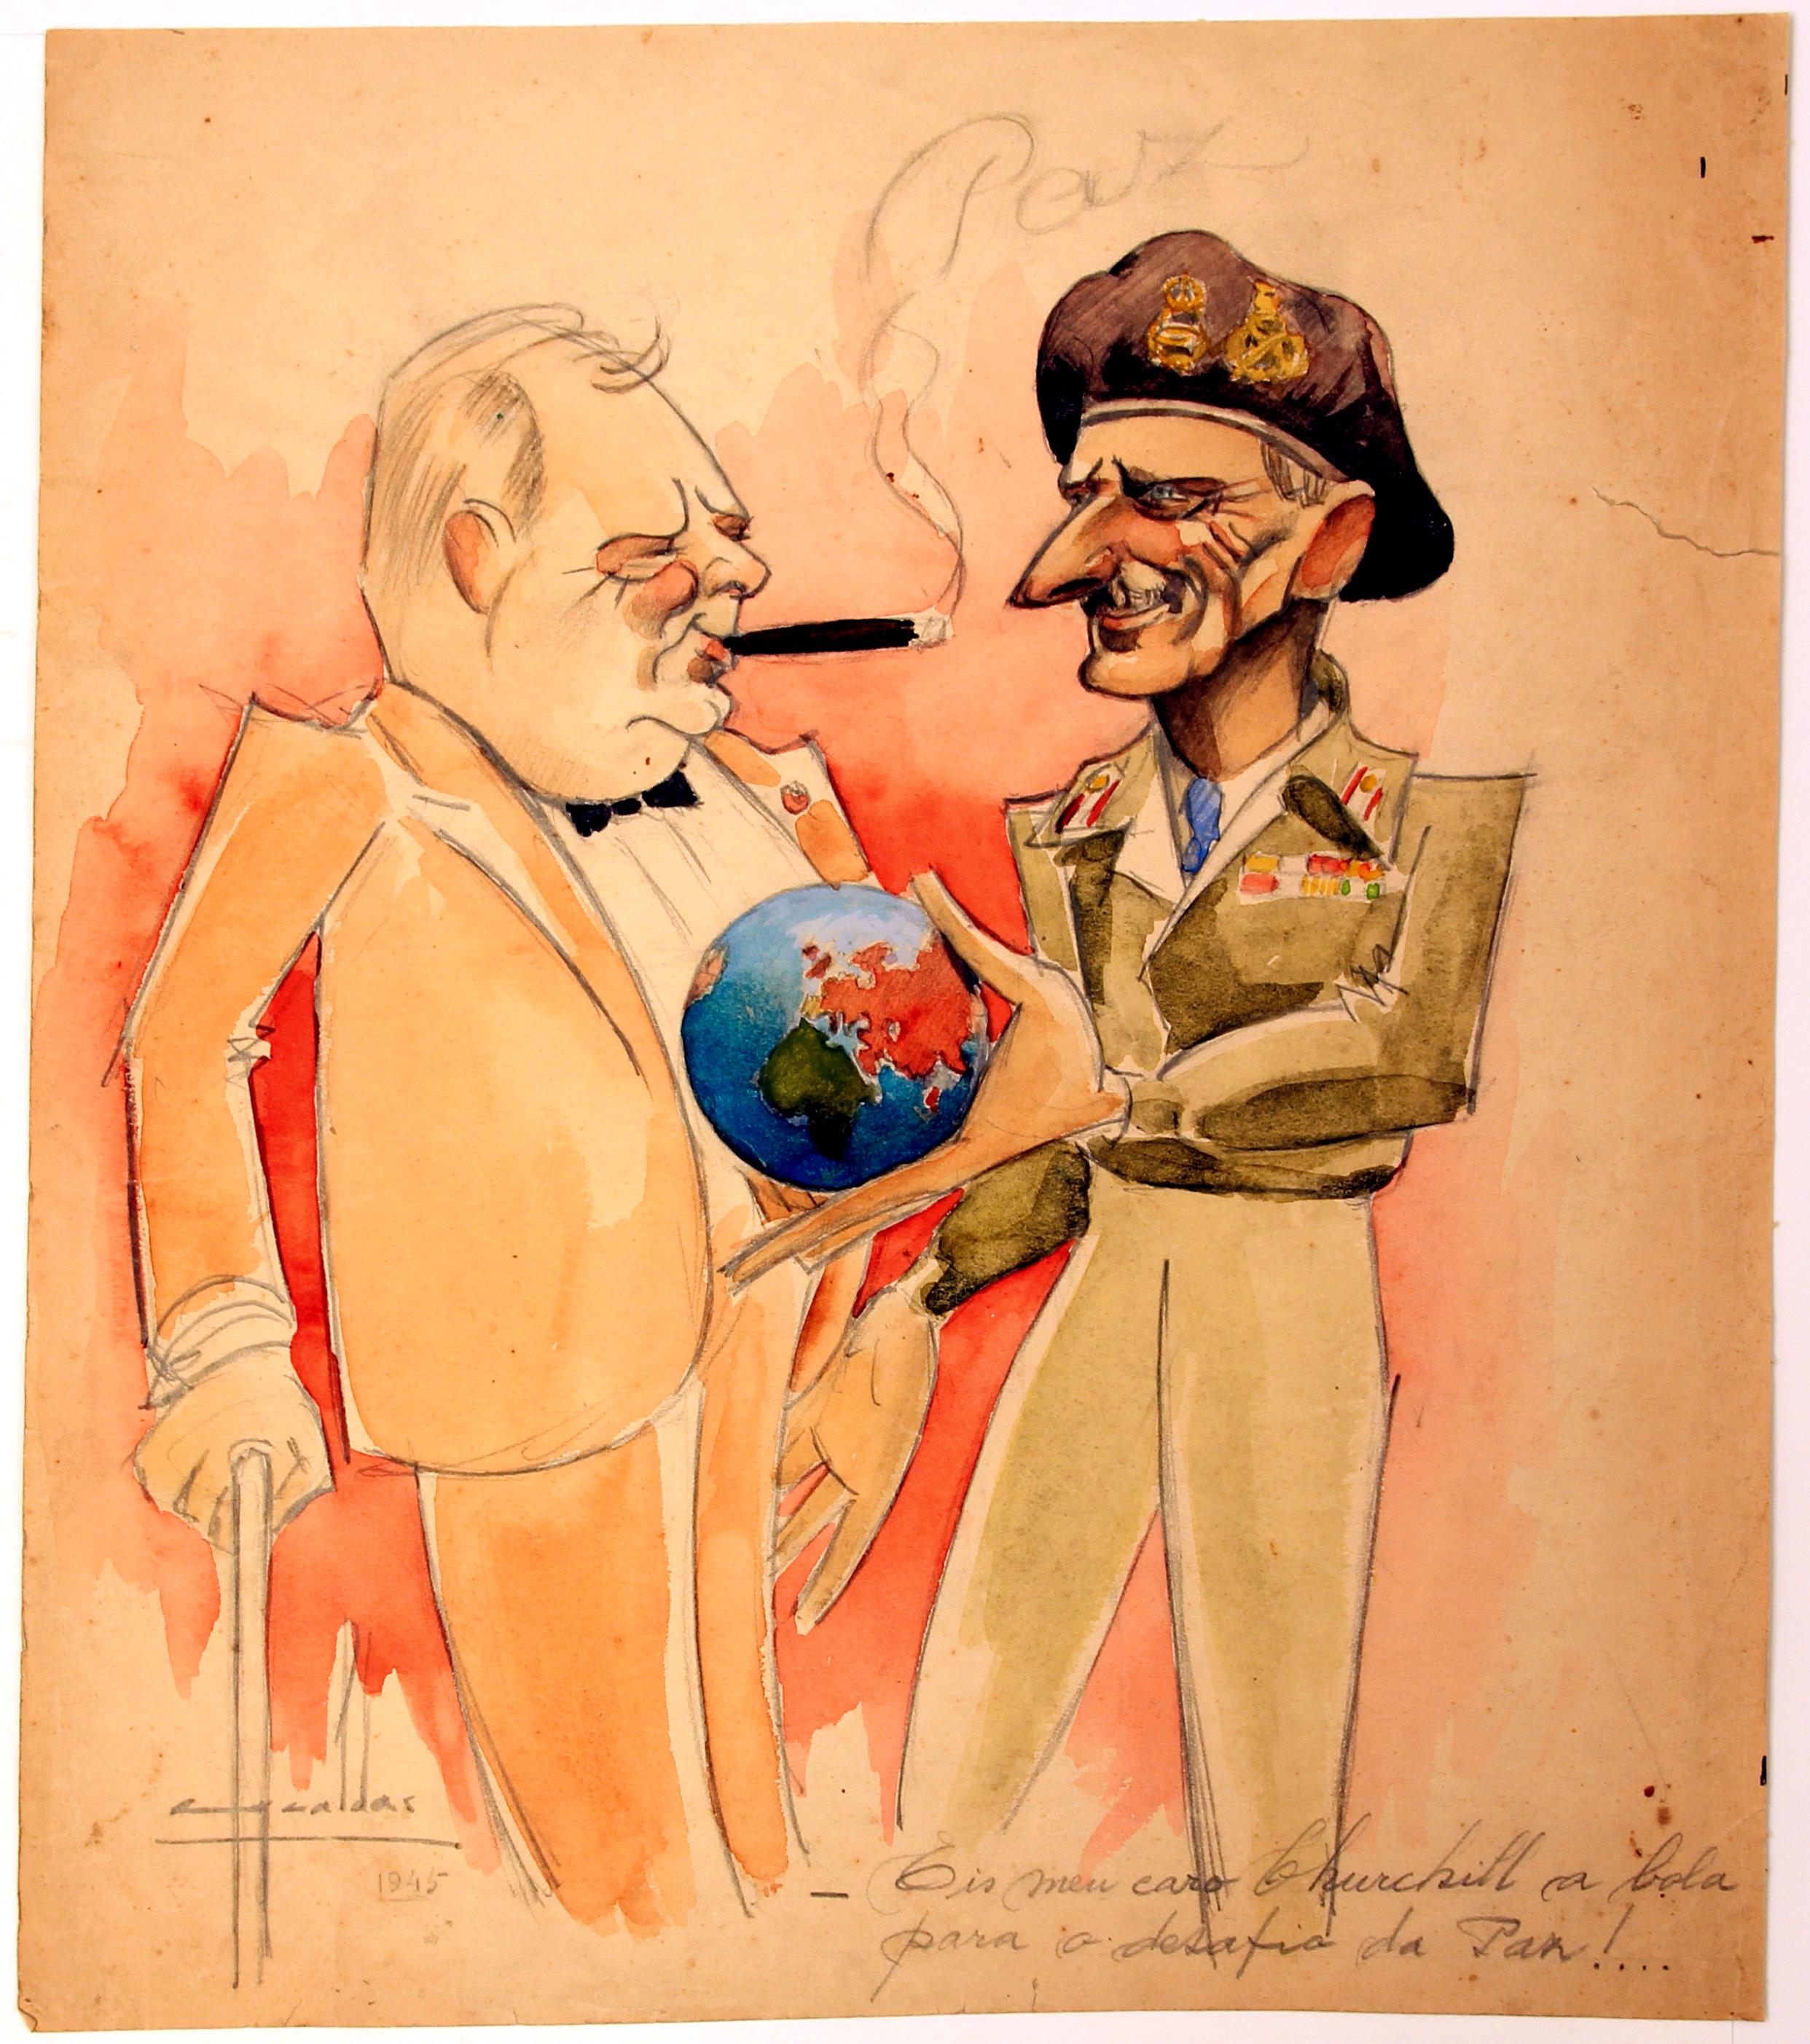 [Caricaturas individuais : Churchill e Montgomery : - Eis meu caro Churchill a bola para o desafio da paz!...]